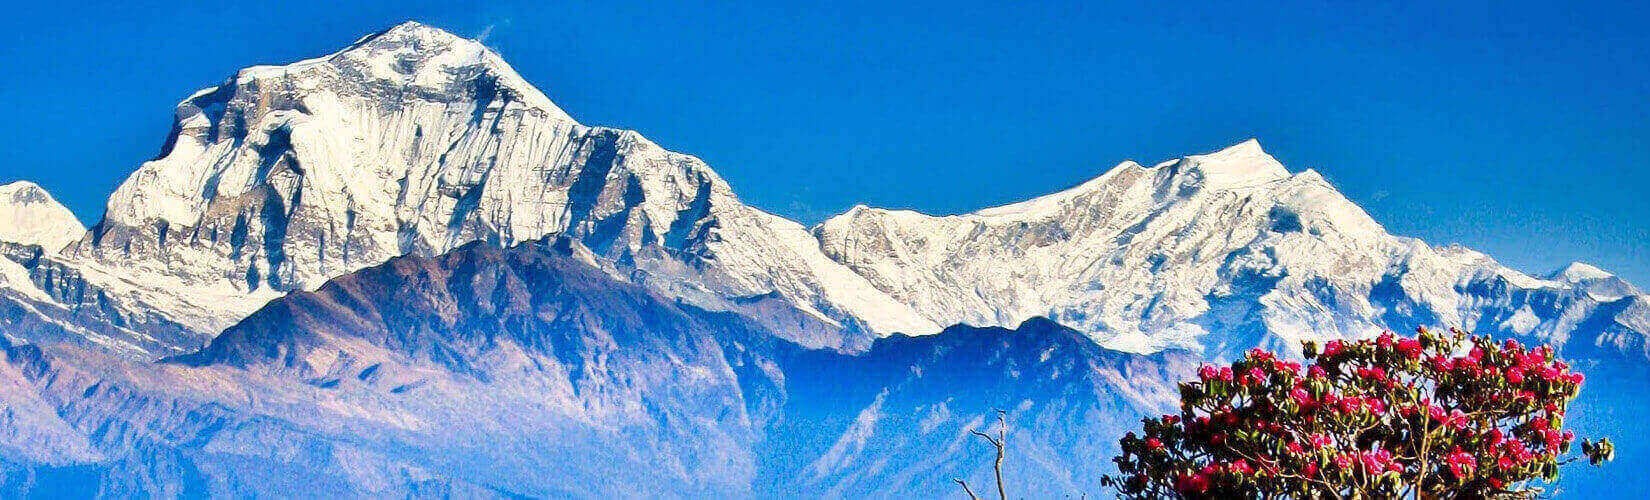 Poon Hill Panorama Trek | Trekking in Nepal | Nepal Trekking Package| Ghorepani Poon Hill Trek